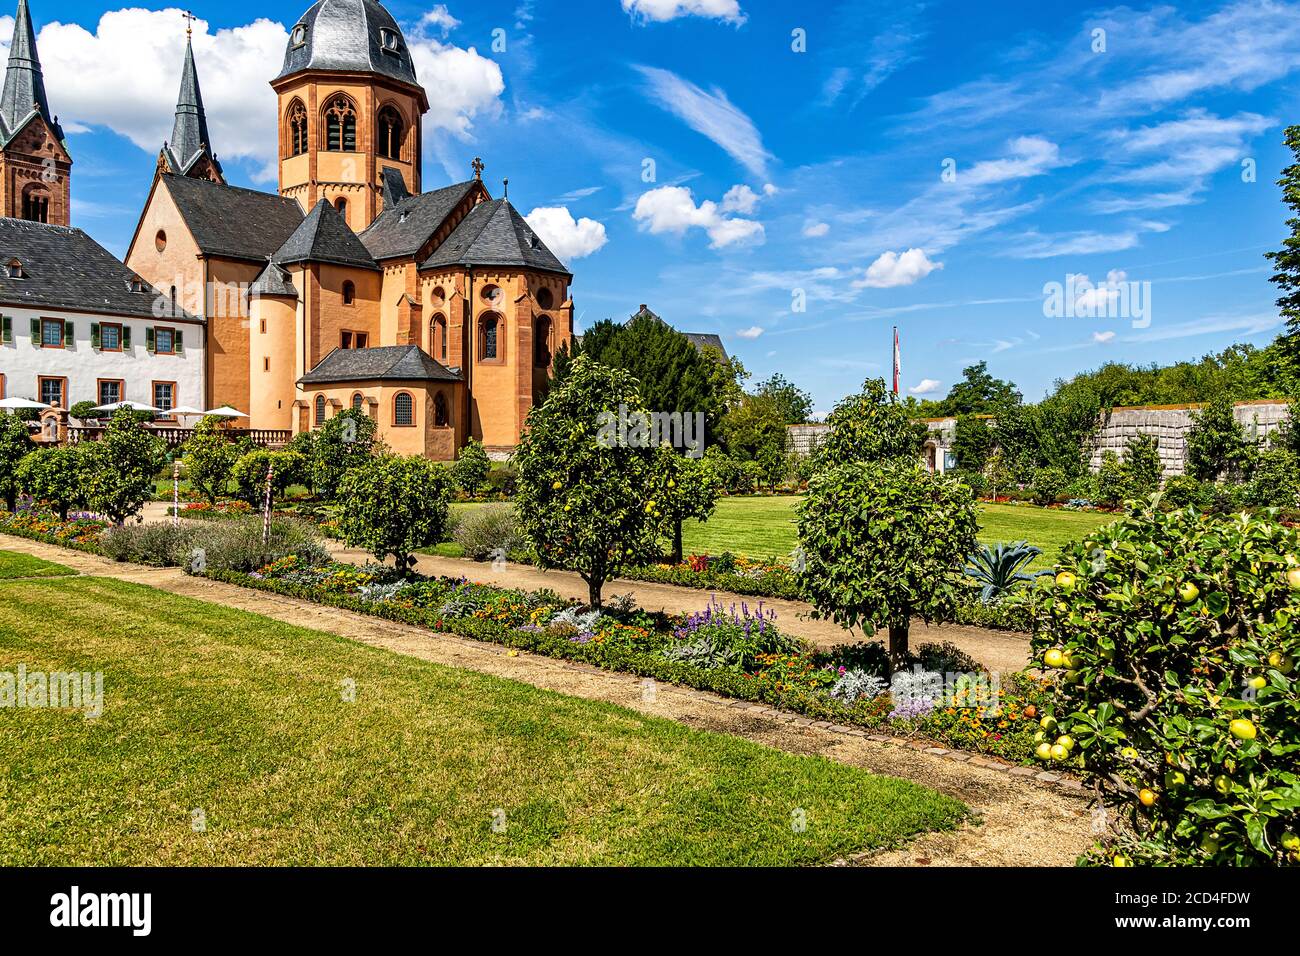 The Klostergarten (Monastery garden) in Seligenstadt, Hesse, Germany Stock Photo